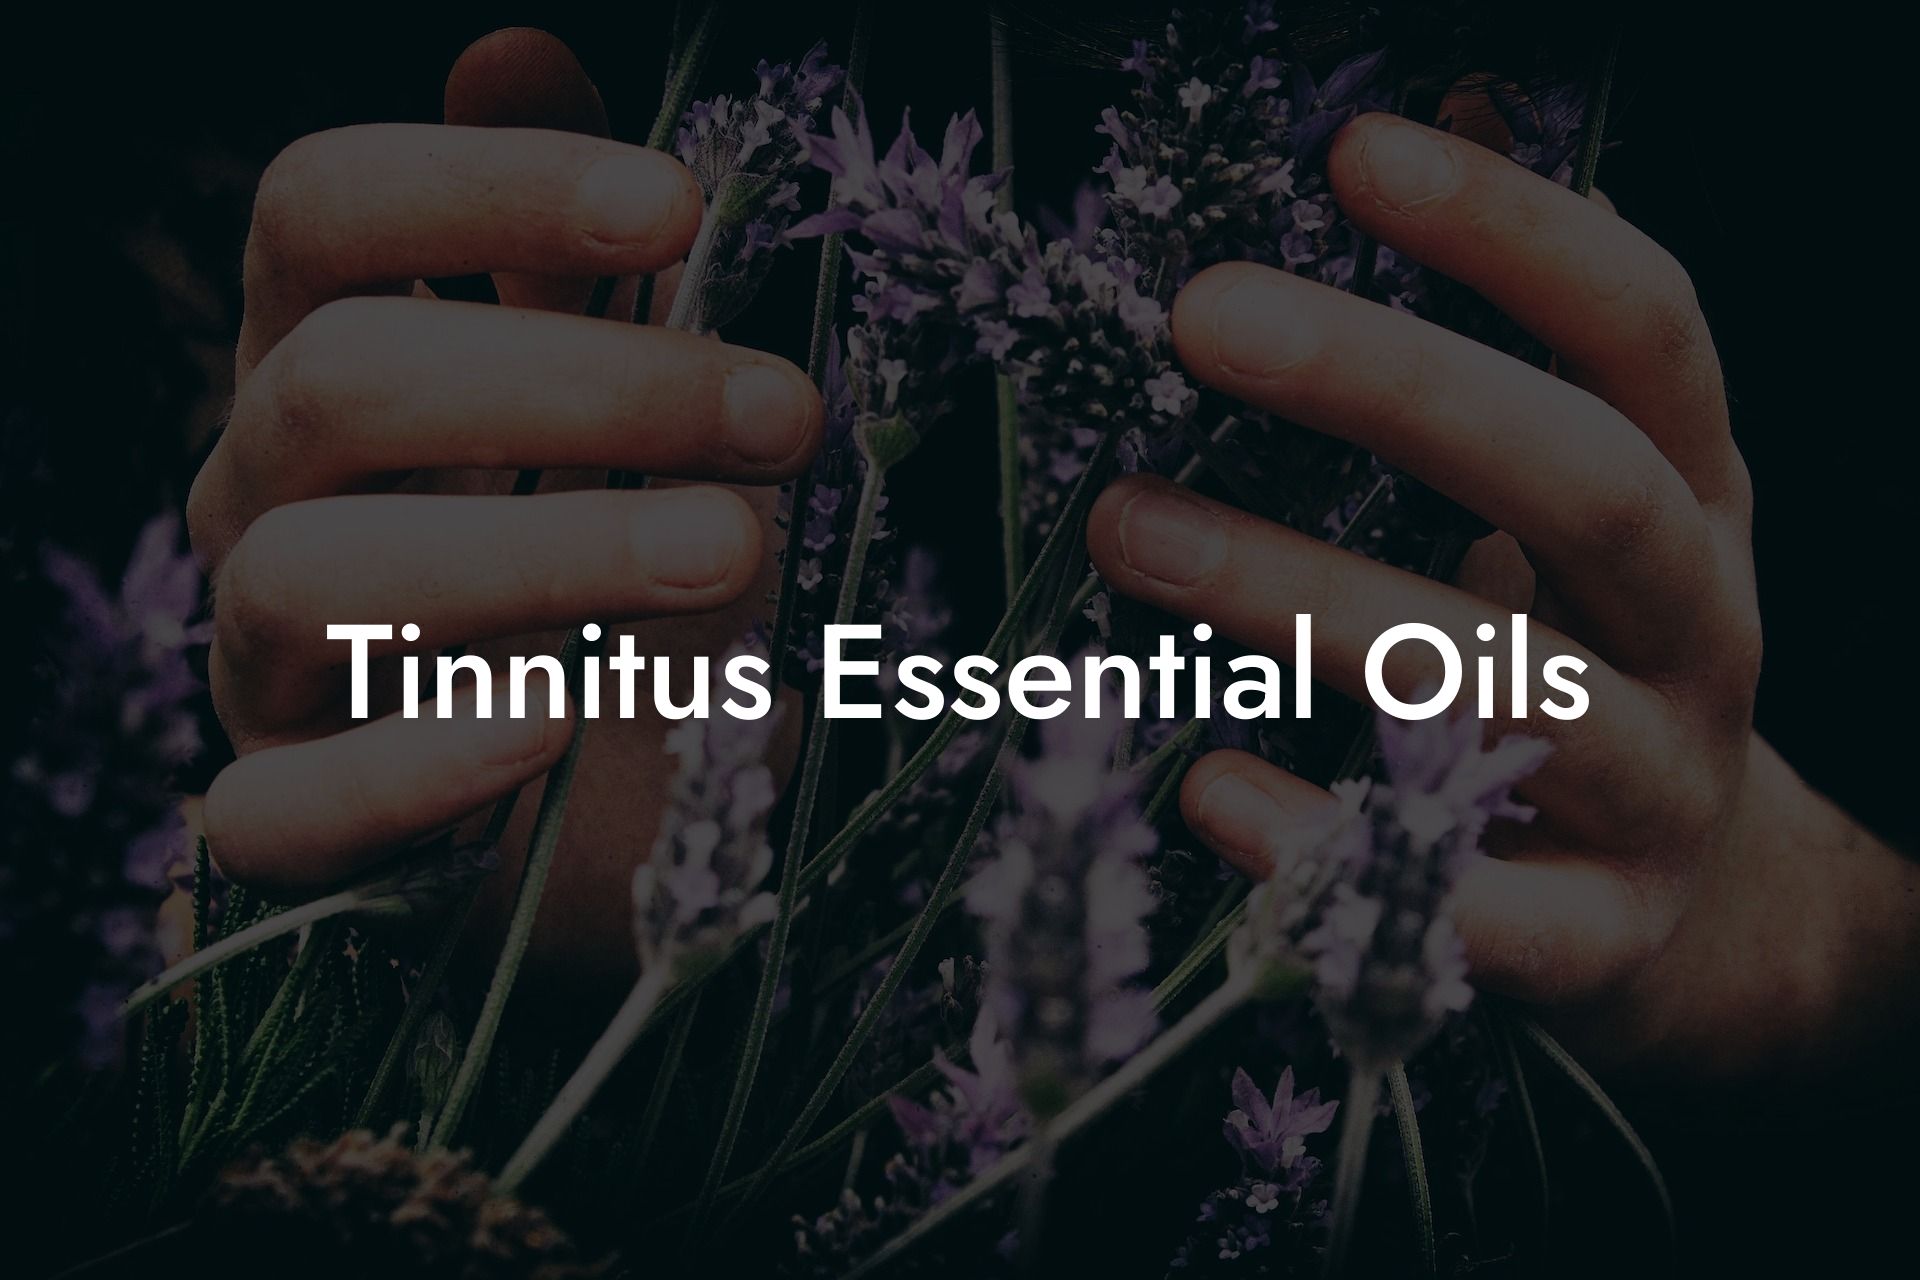 Tinnitus Essential Oils